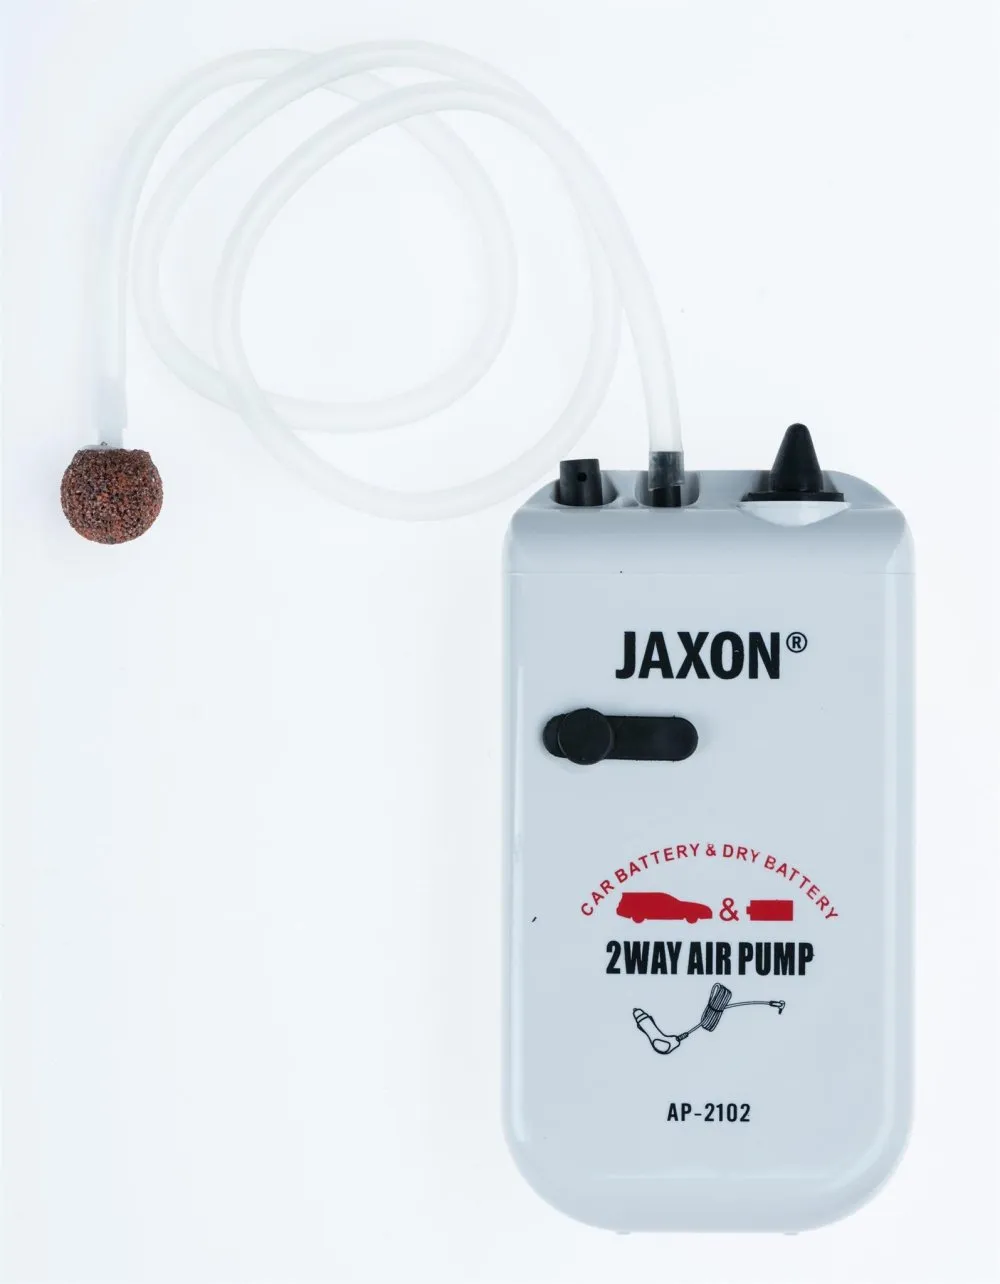 SNECI - Horgász webshop és horgászbolt - JAXON AIR PUMP 2xR20 - 1,5V NOT INCL.